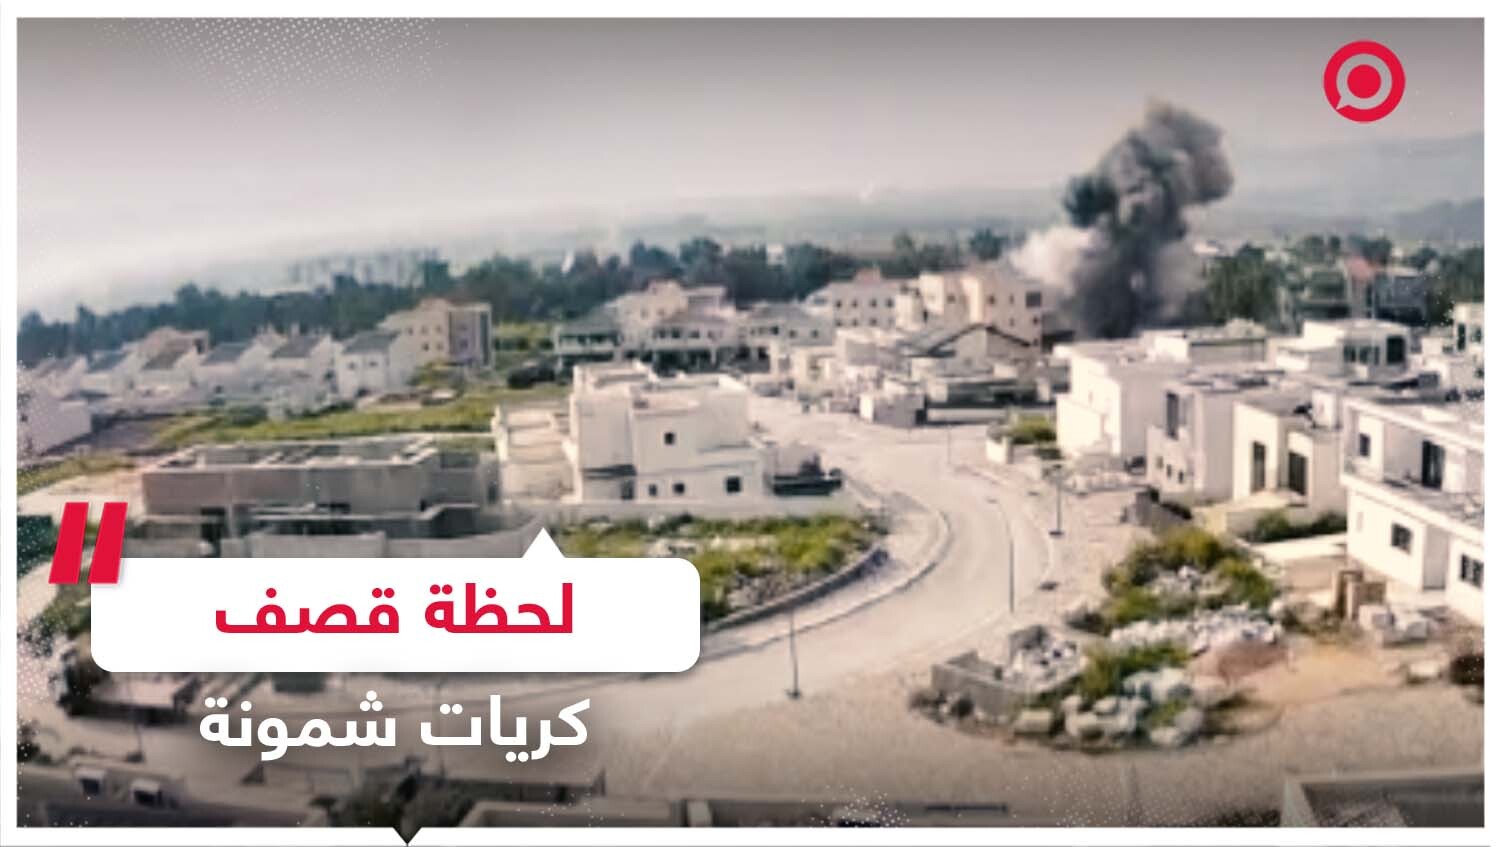 لحظة قصف مستوطنة كريات شمونة بصواريخ من جنوب لبنان